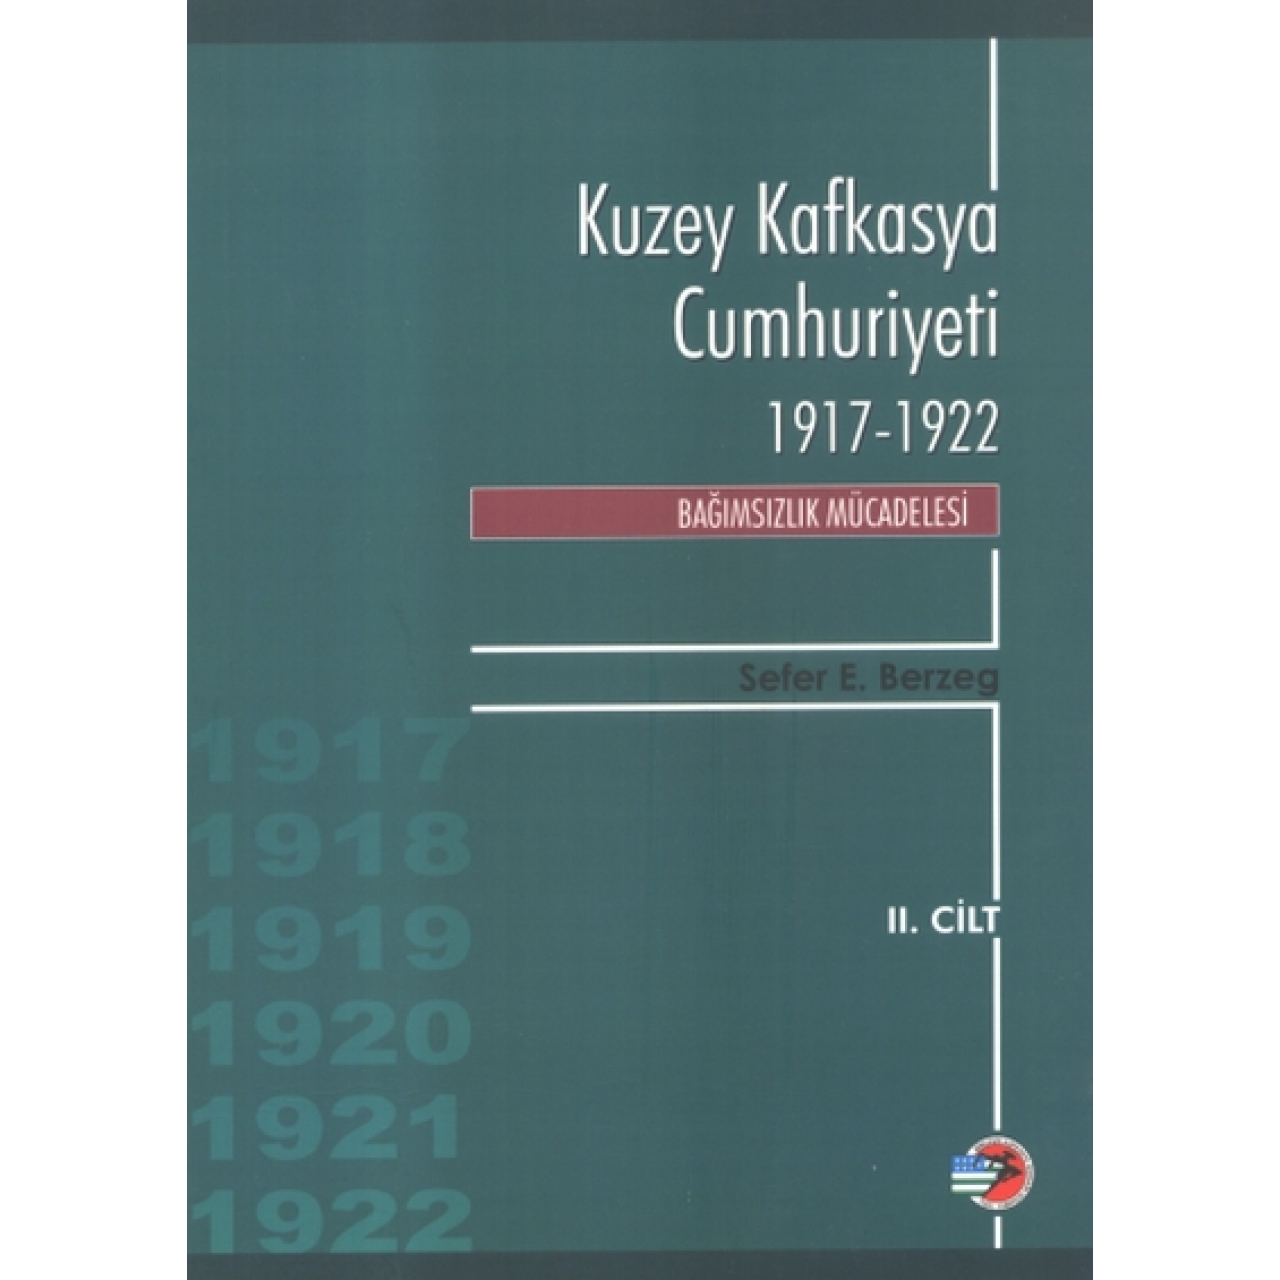 Kuzey Kafkasya Cumhuriyeti 1917-1922 Cilt II - Bağımsızlık Mücadelesi